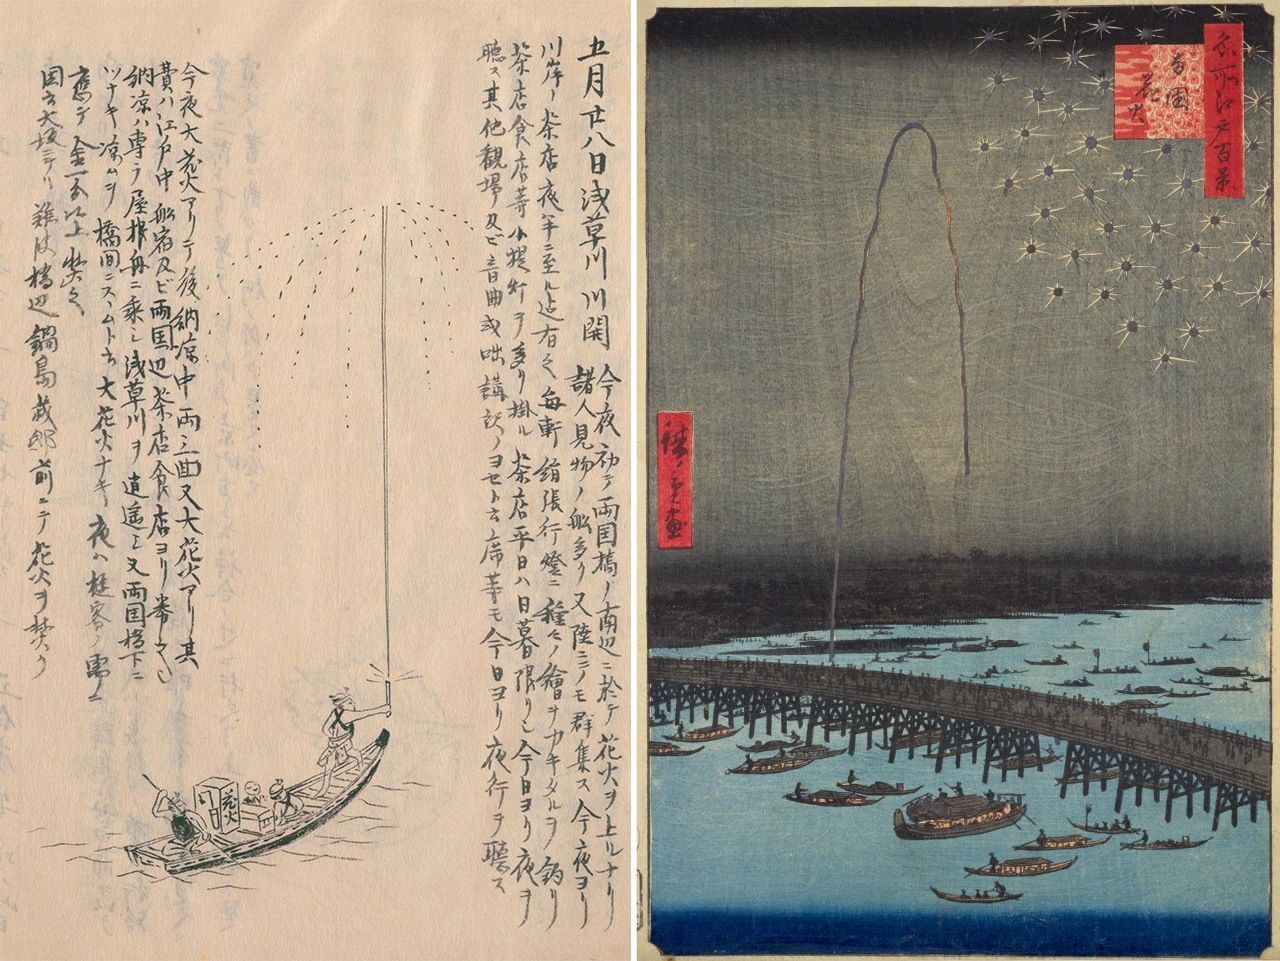 （左）守貞所繪隅田川花火。雖然只有一艘船，但船上的煙花師傅卻畫得細緻，聚焦在「人」的身上。（右）《名所江戶百景 兩國花火》（廣重畫，安政5年，即1858年，國立國會圖書館藏）中畫了遠處數艘船隻、橋樑還有群眾